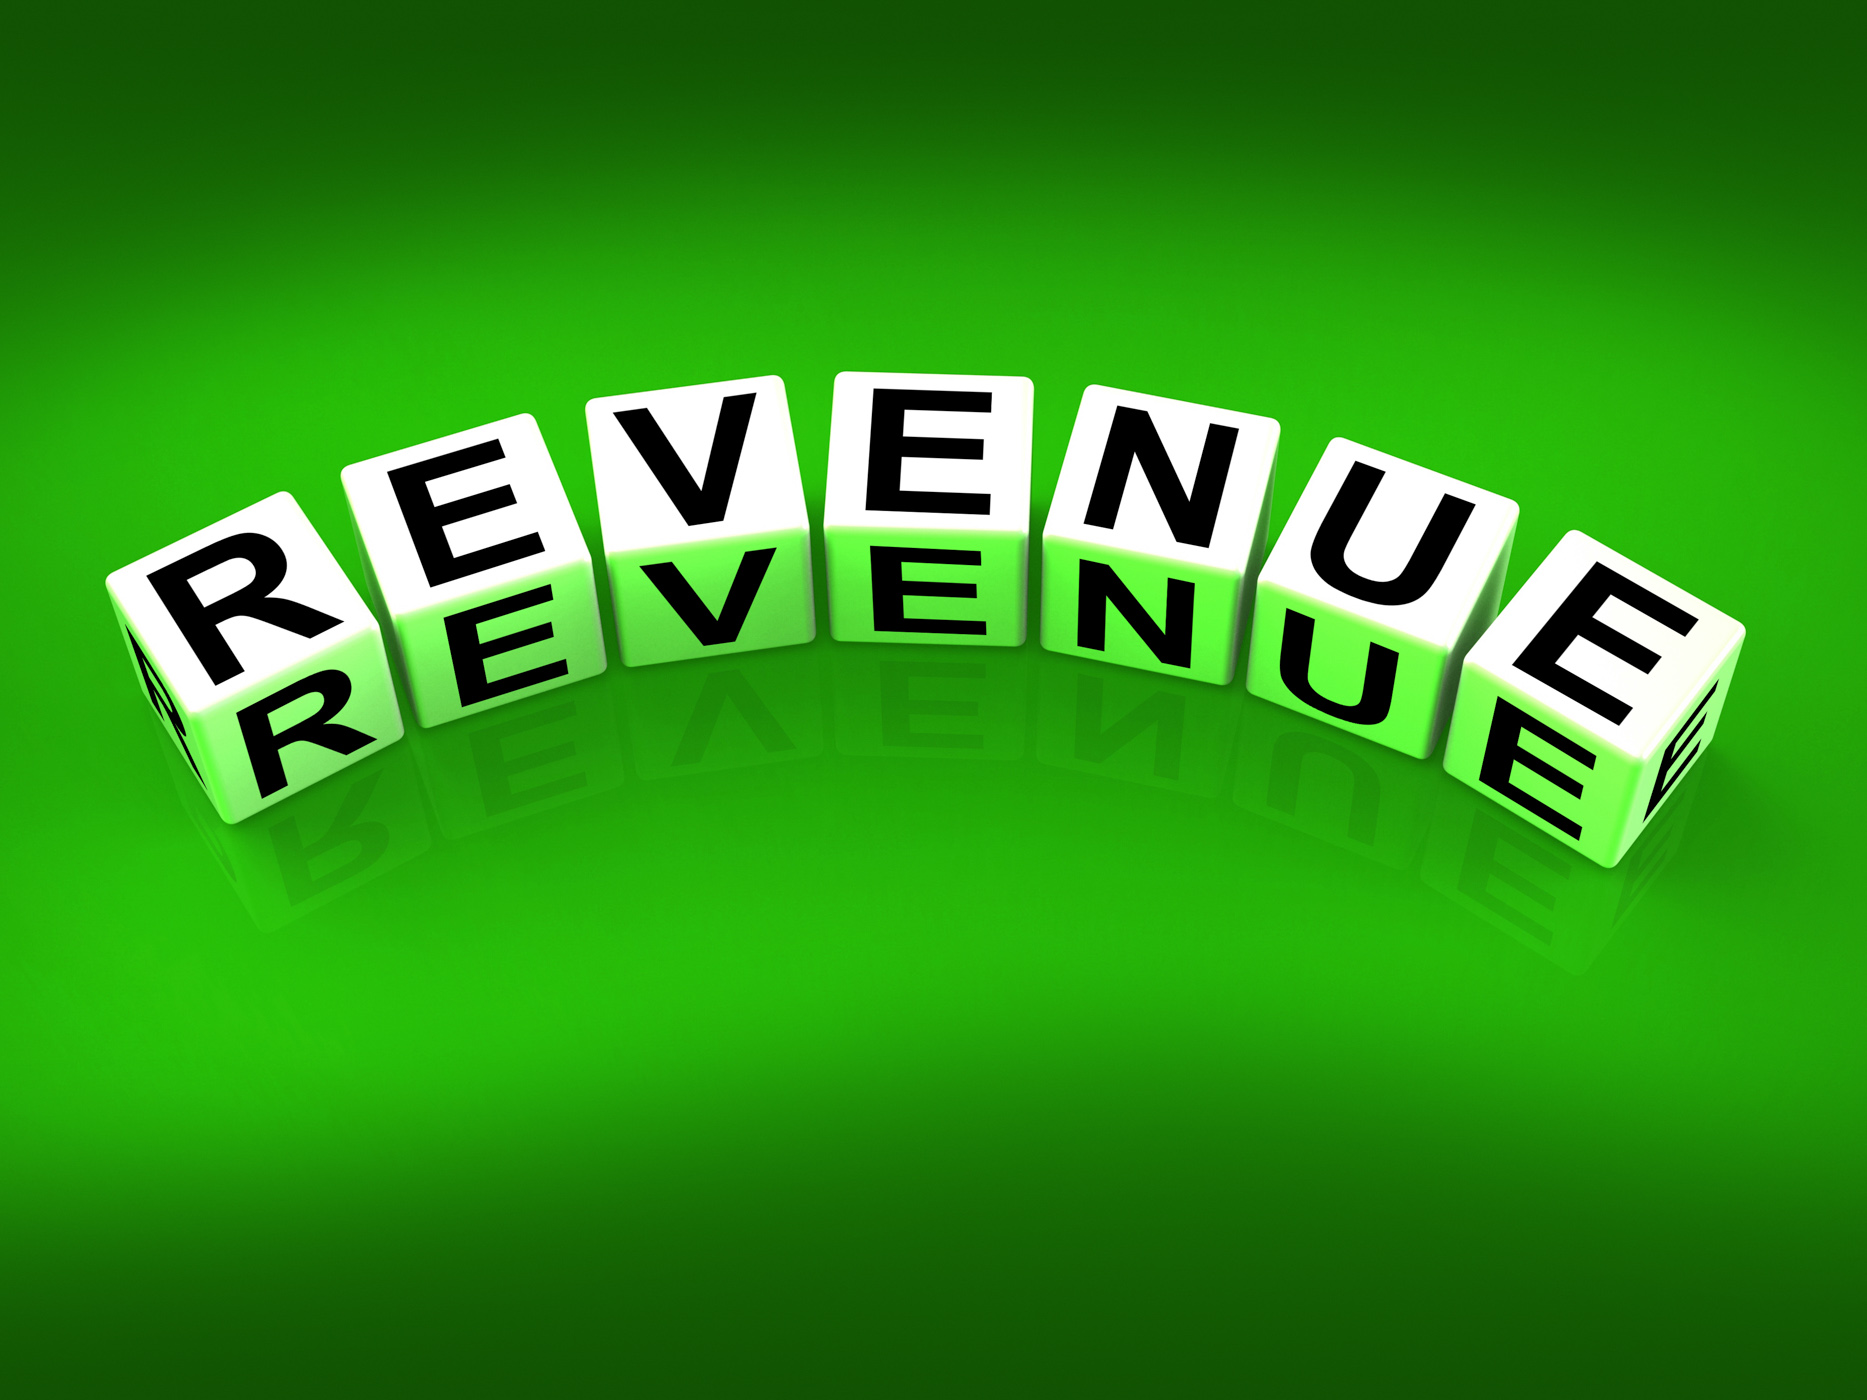 Revenue blocks mean finances revenues and proceeds photo